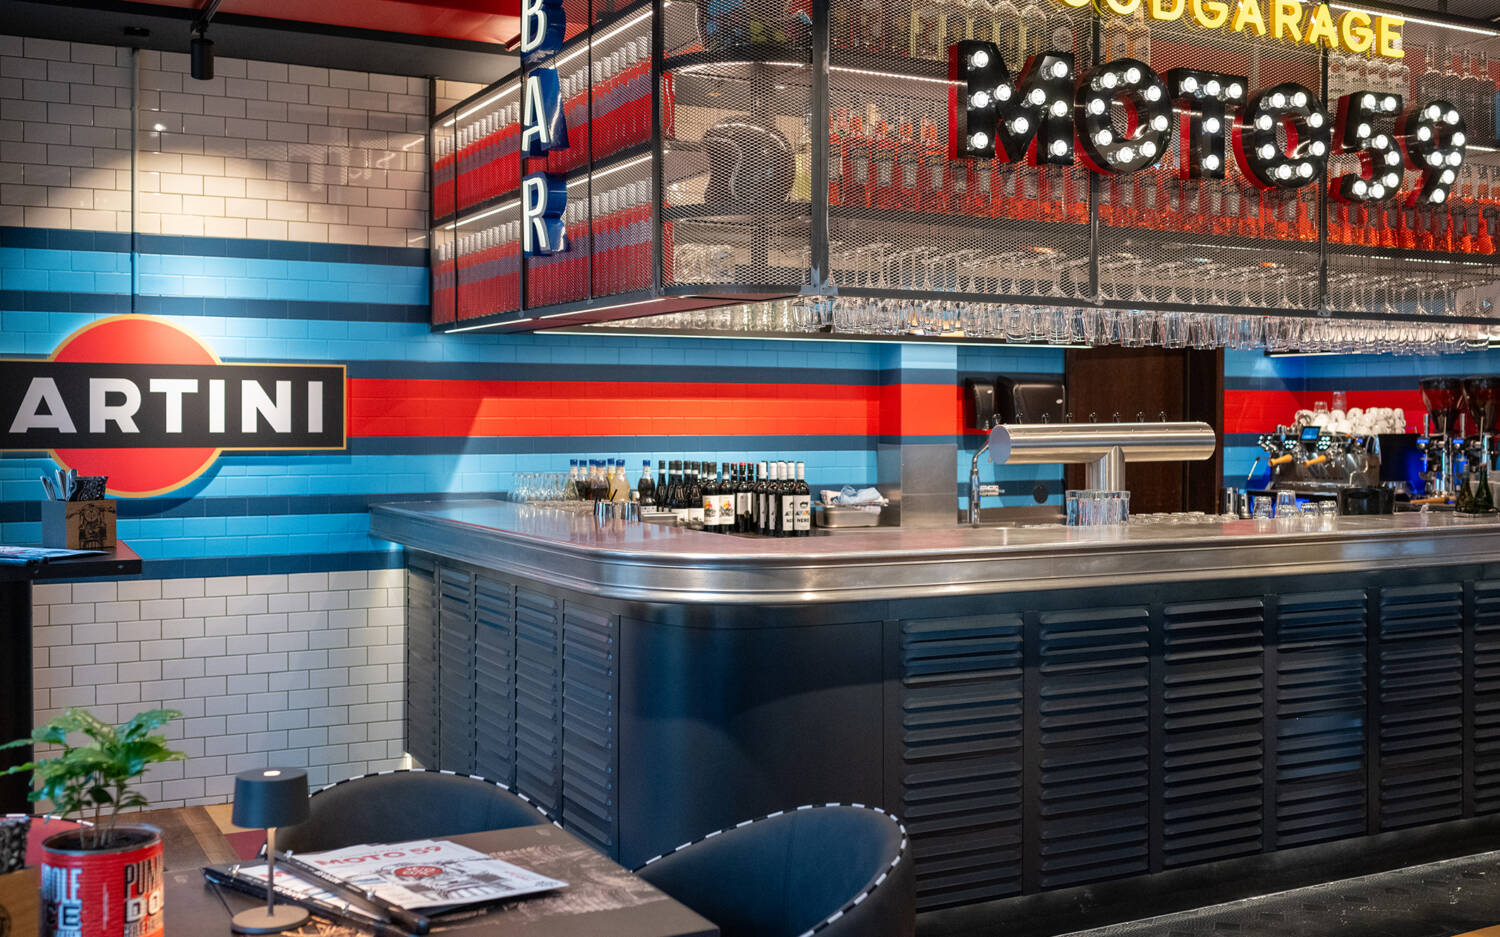 Werkstatt oder Restaurant? In der Moto59 Foodgarage duftet es nach Burger und Pizza statt Motorenöl / ©Moto59 Foodgarage